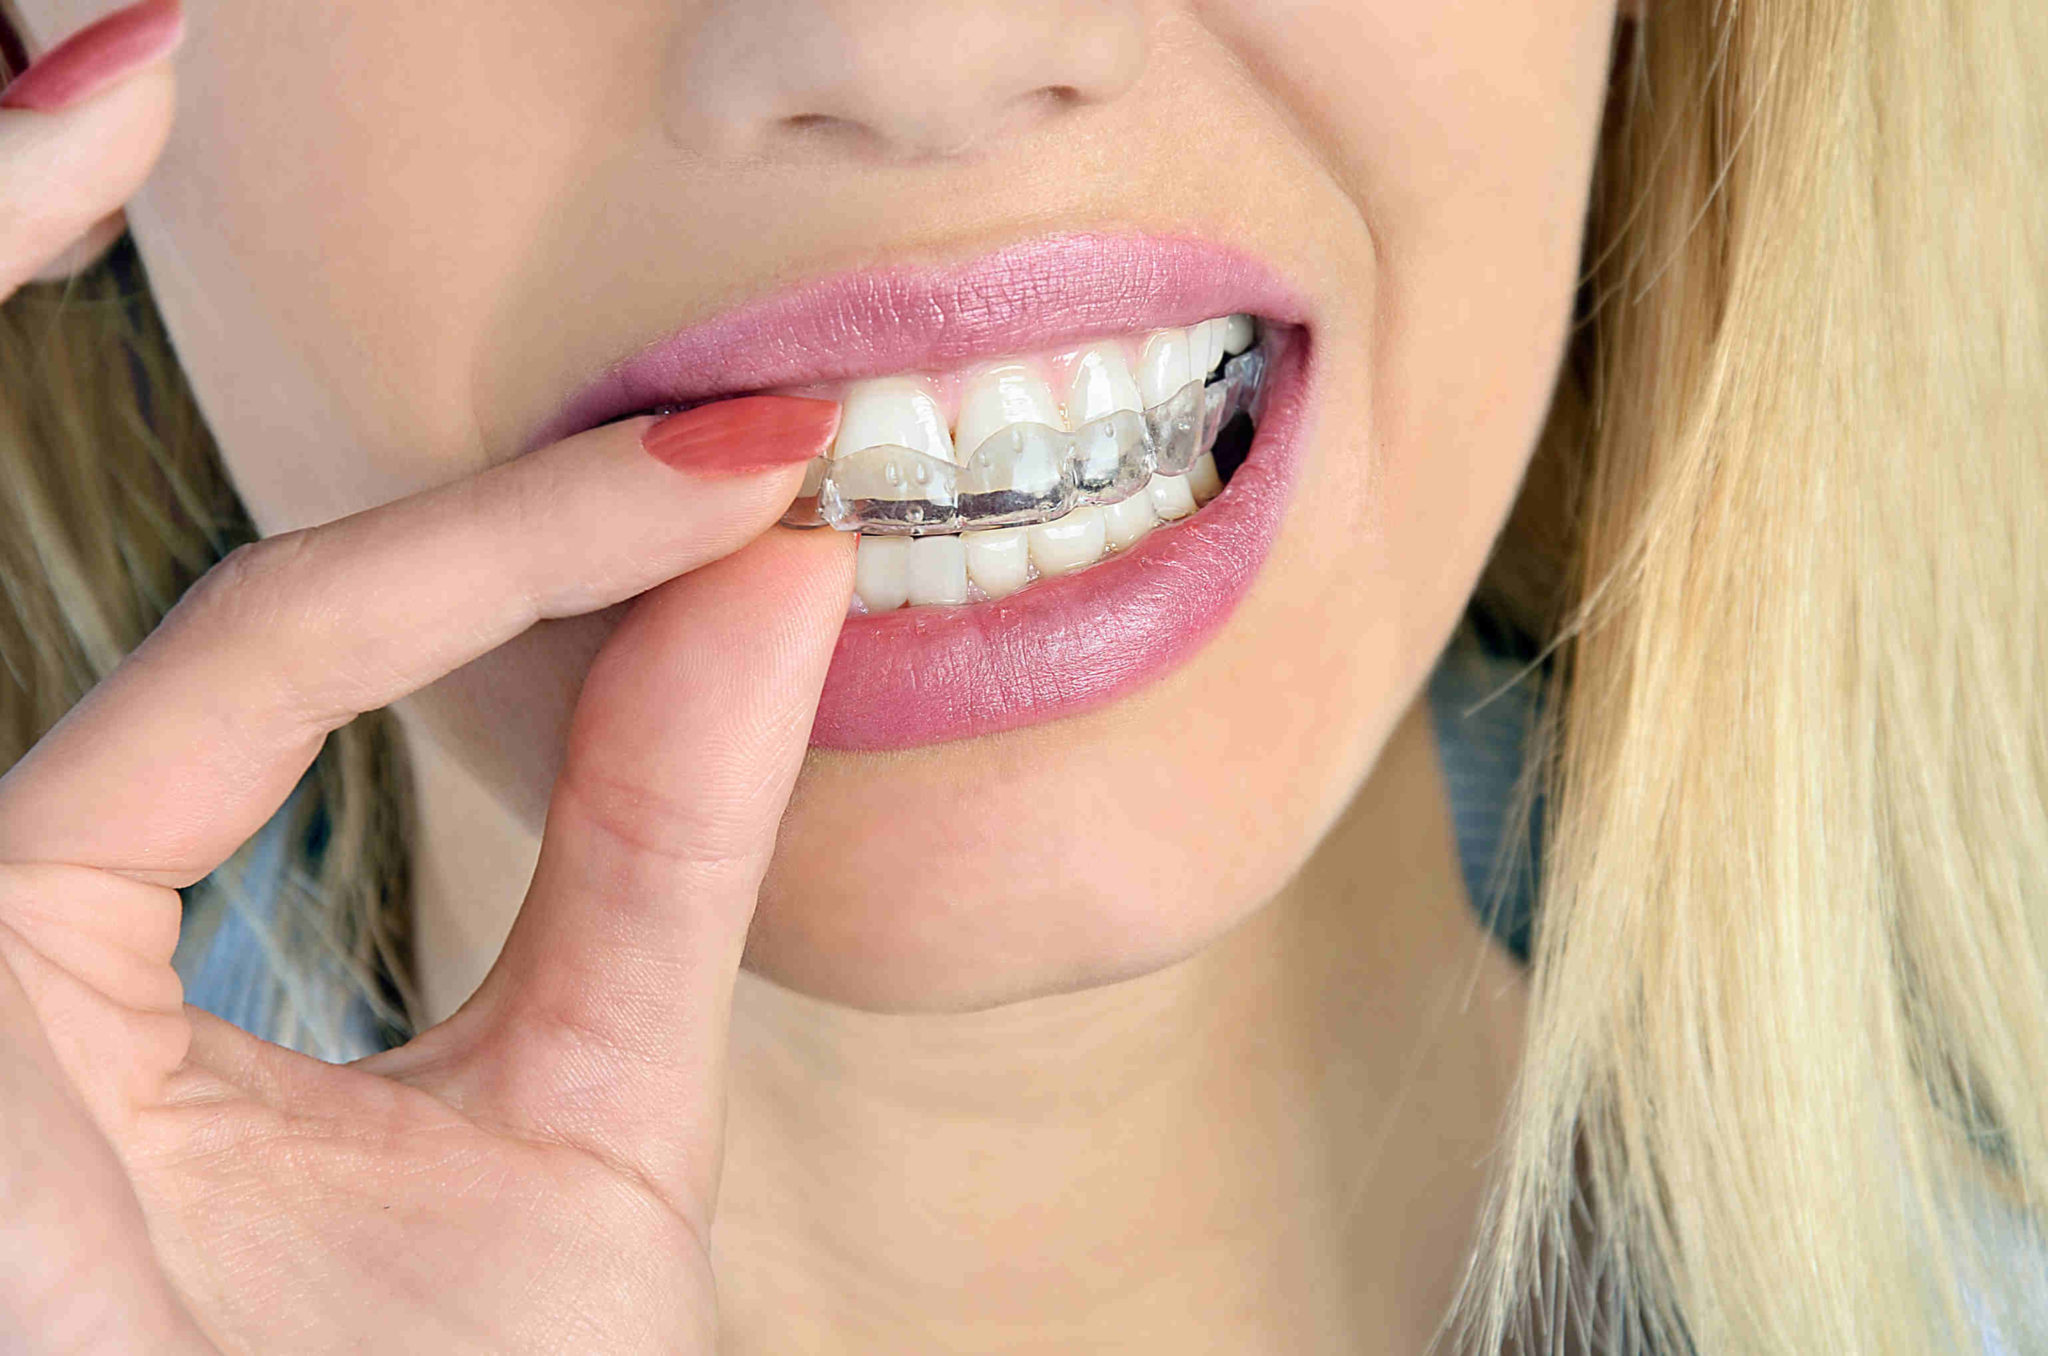 Gouttière dentaire contre le grincement des dents - Outspot